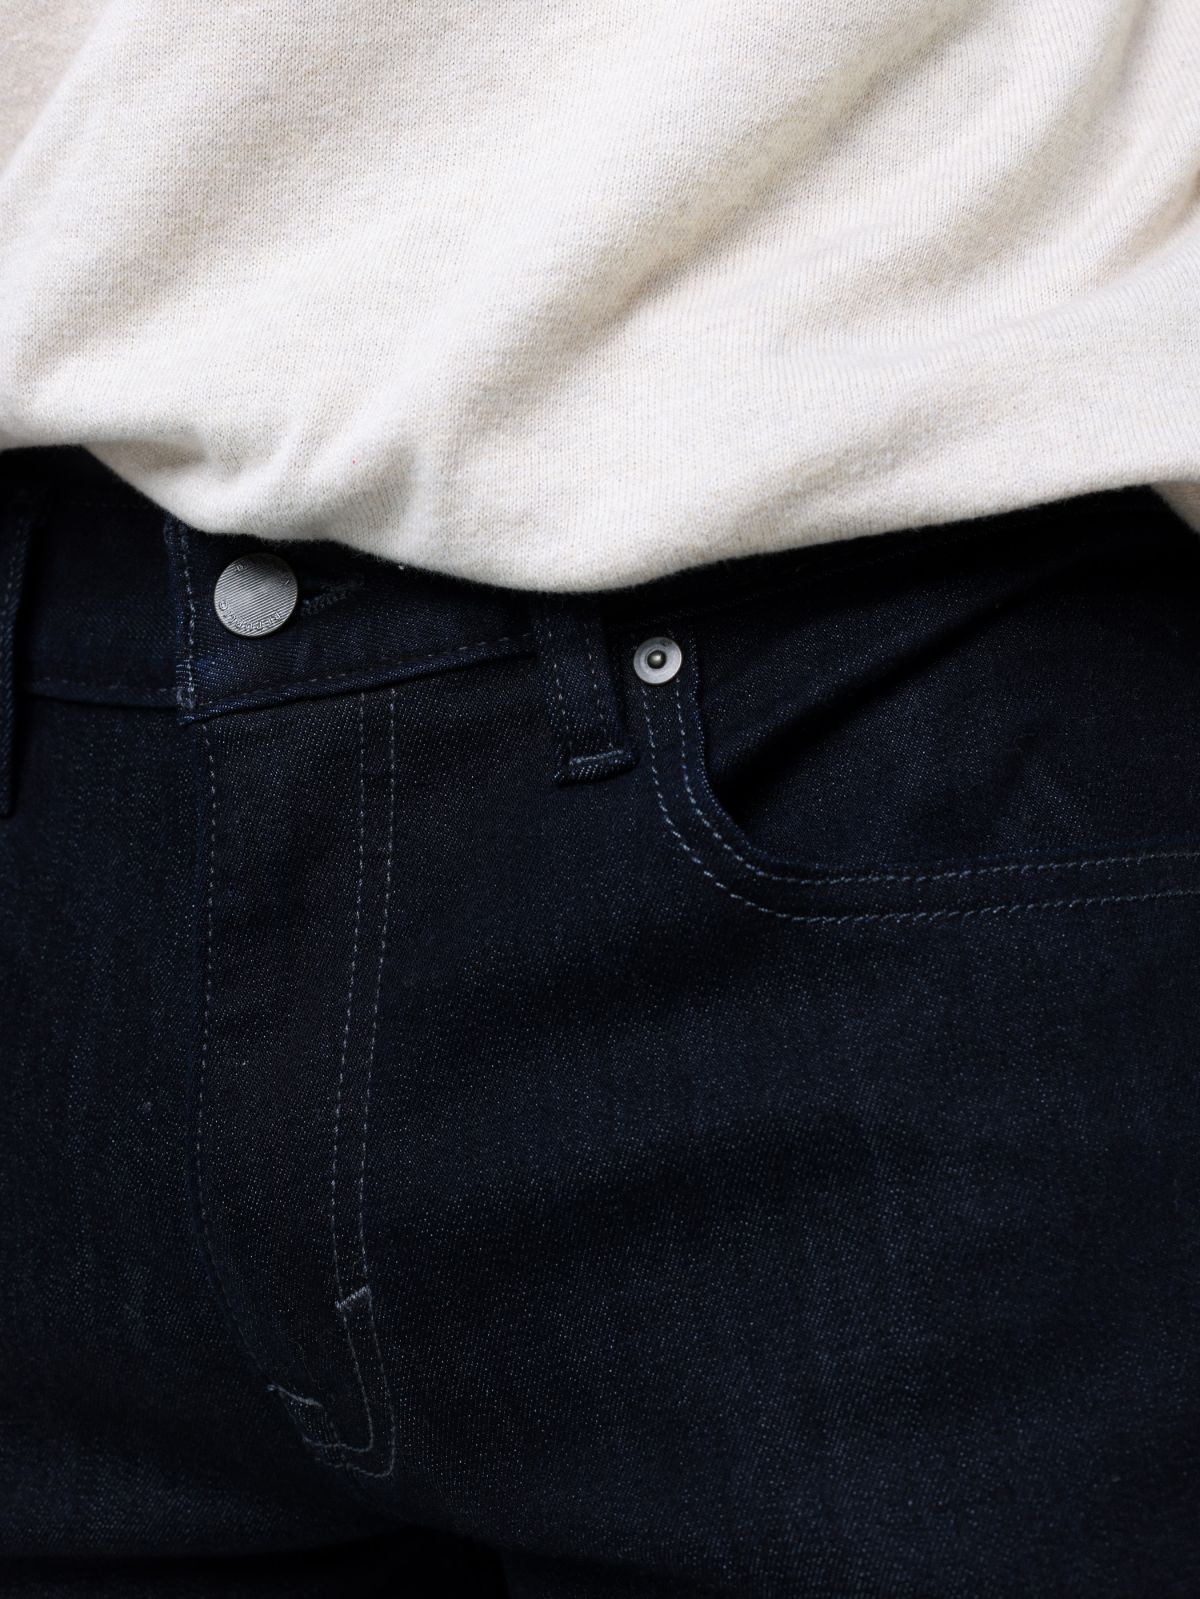  ג'ינס סלים בשטיפה כהה של BANANA REPUBLIC